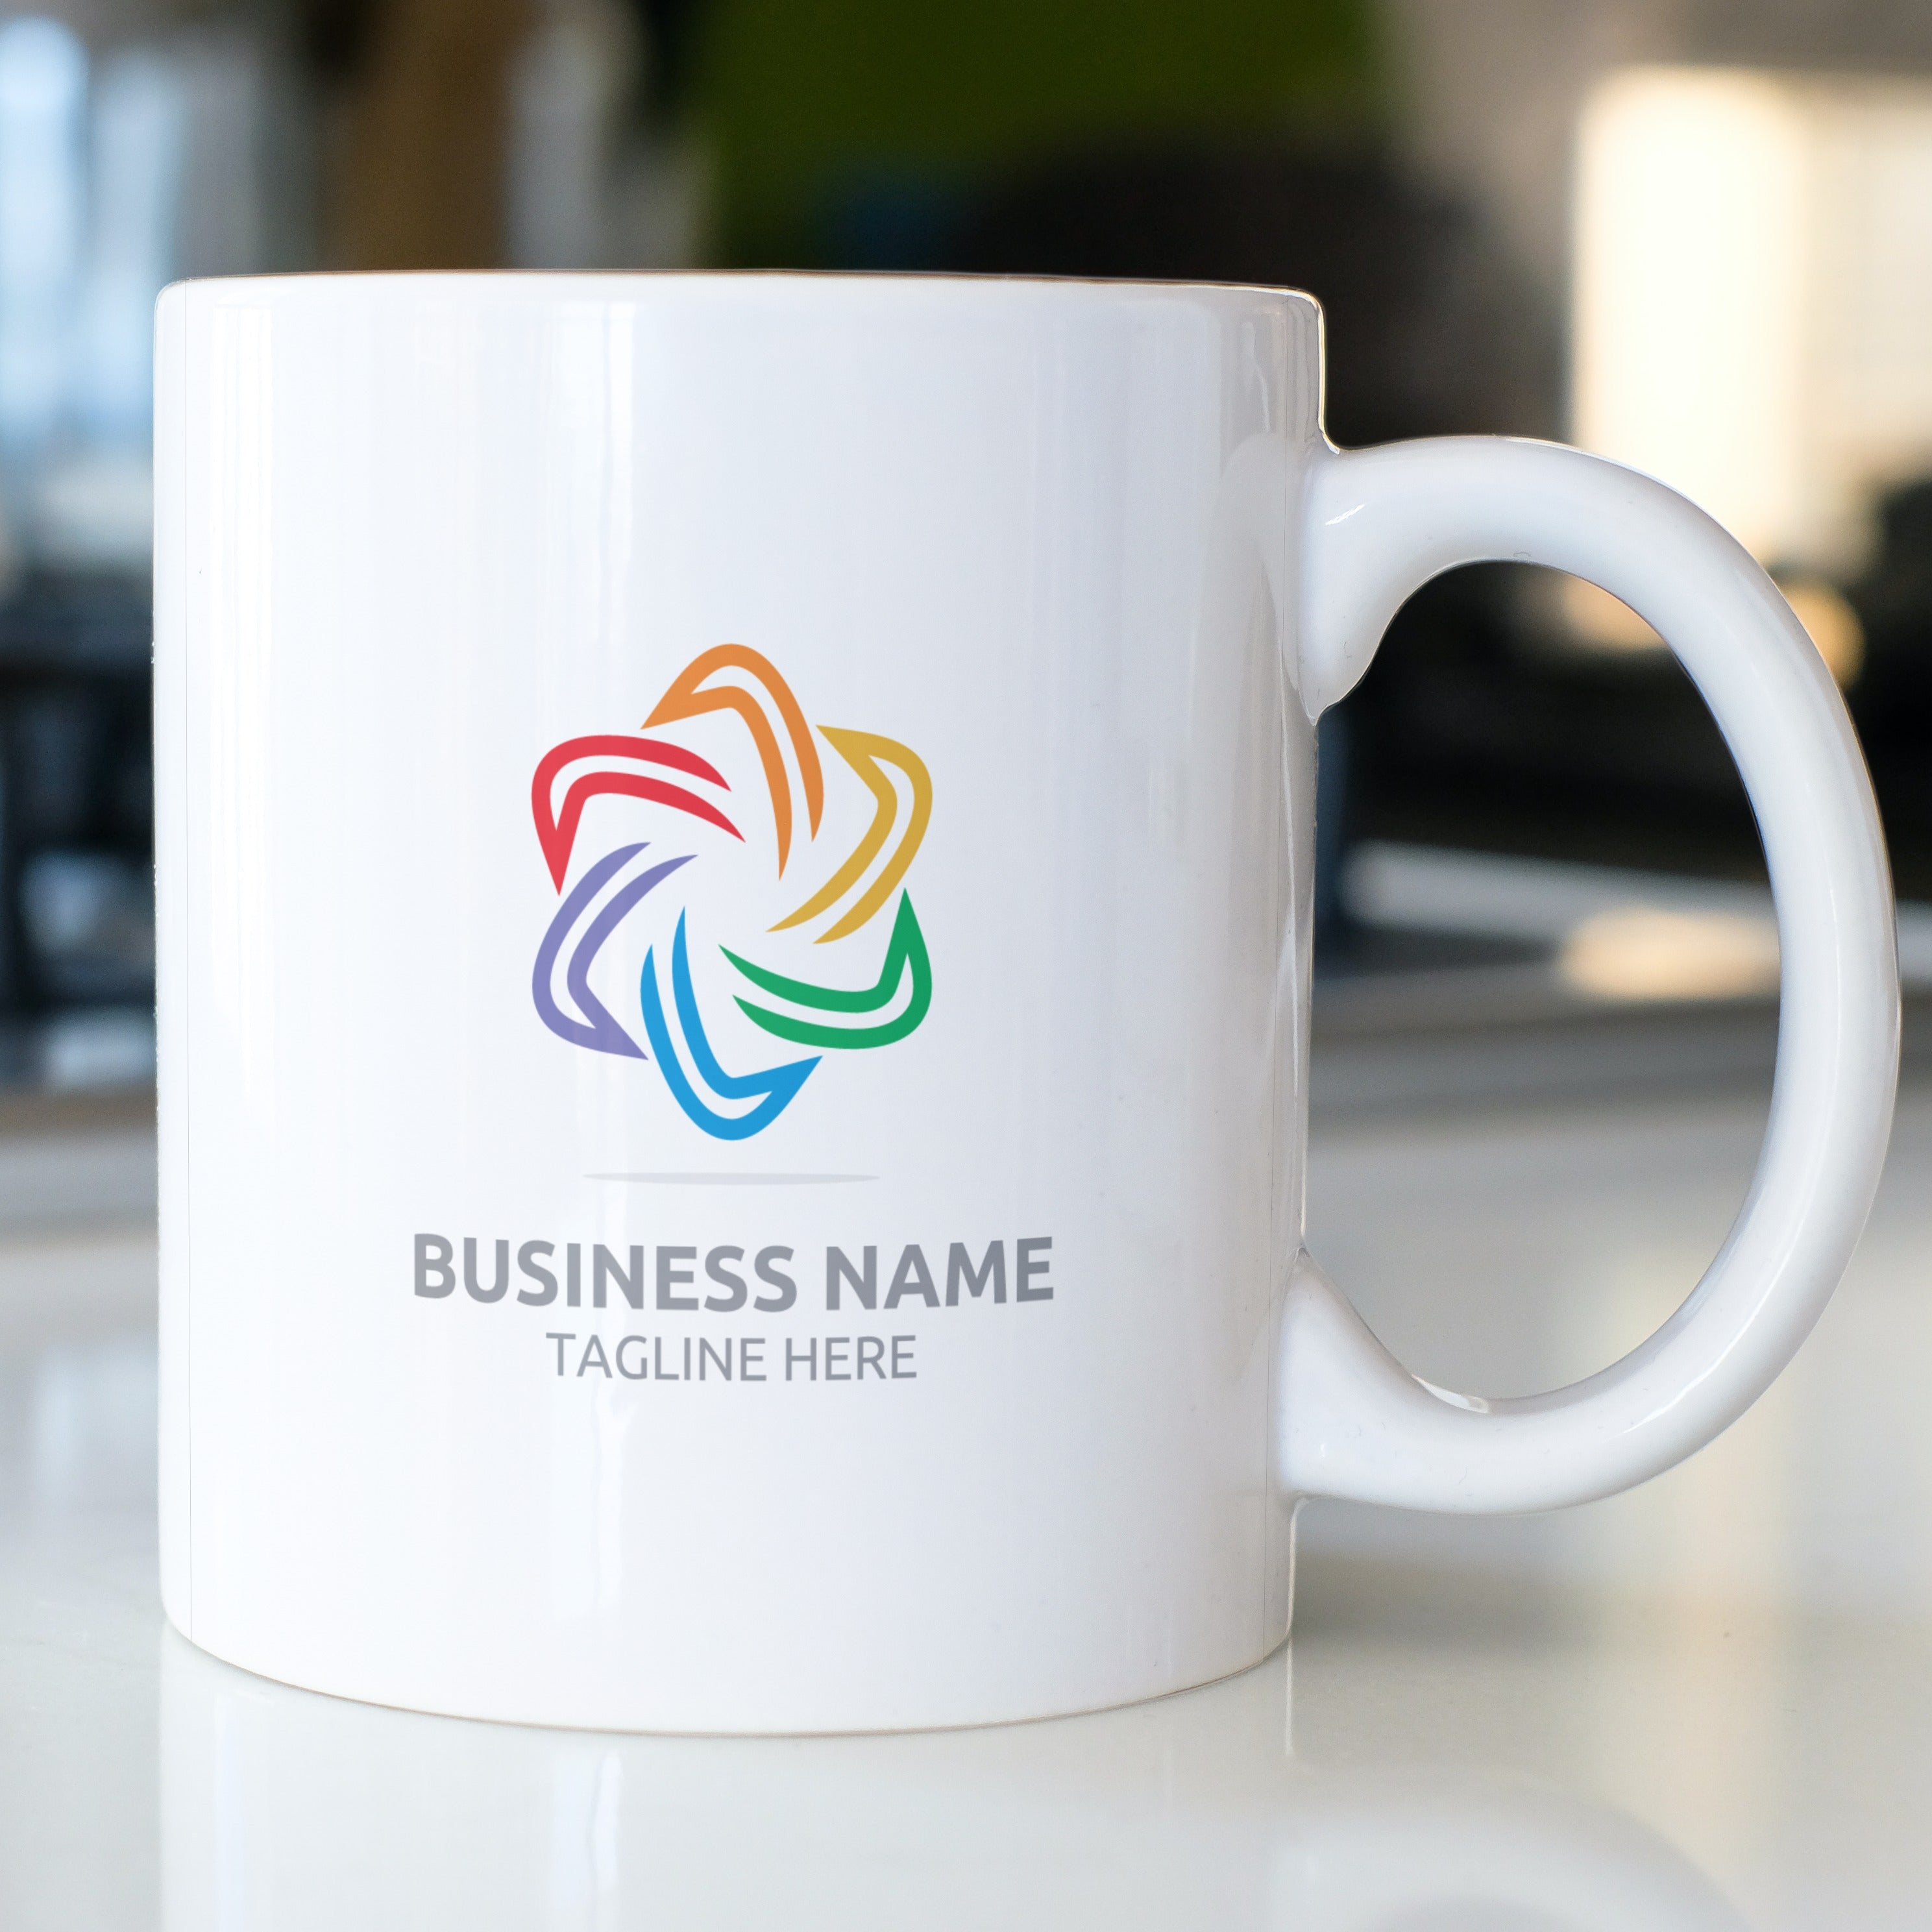 business promotional Mug with logo (1)